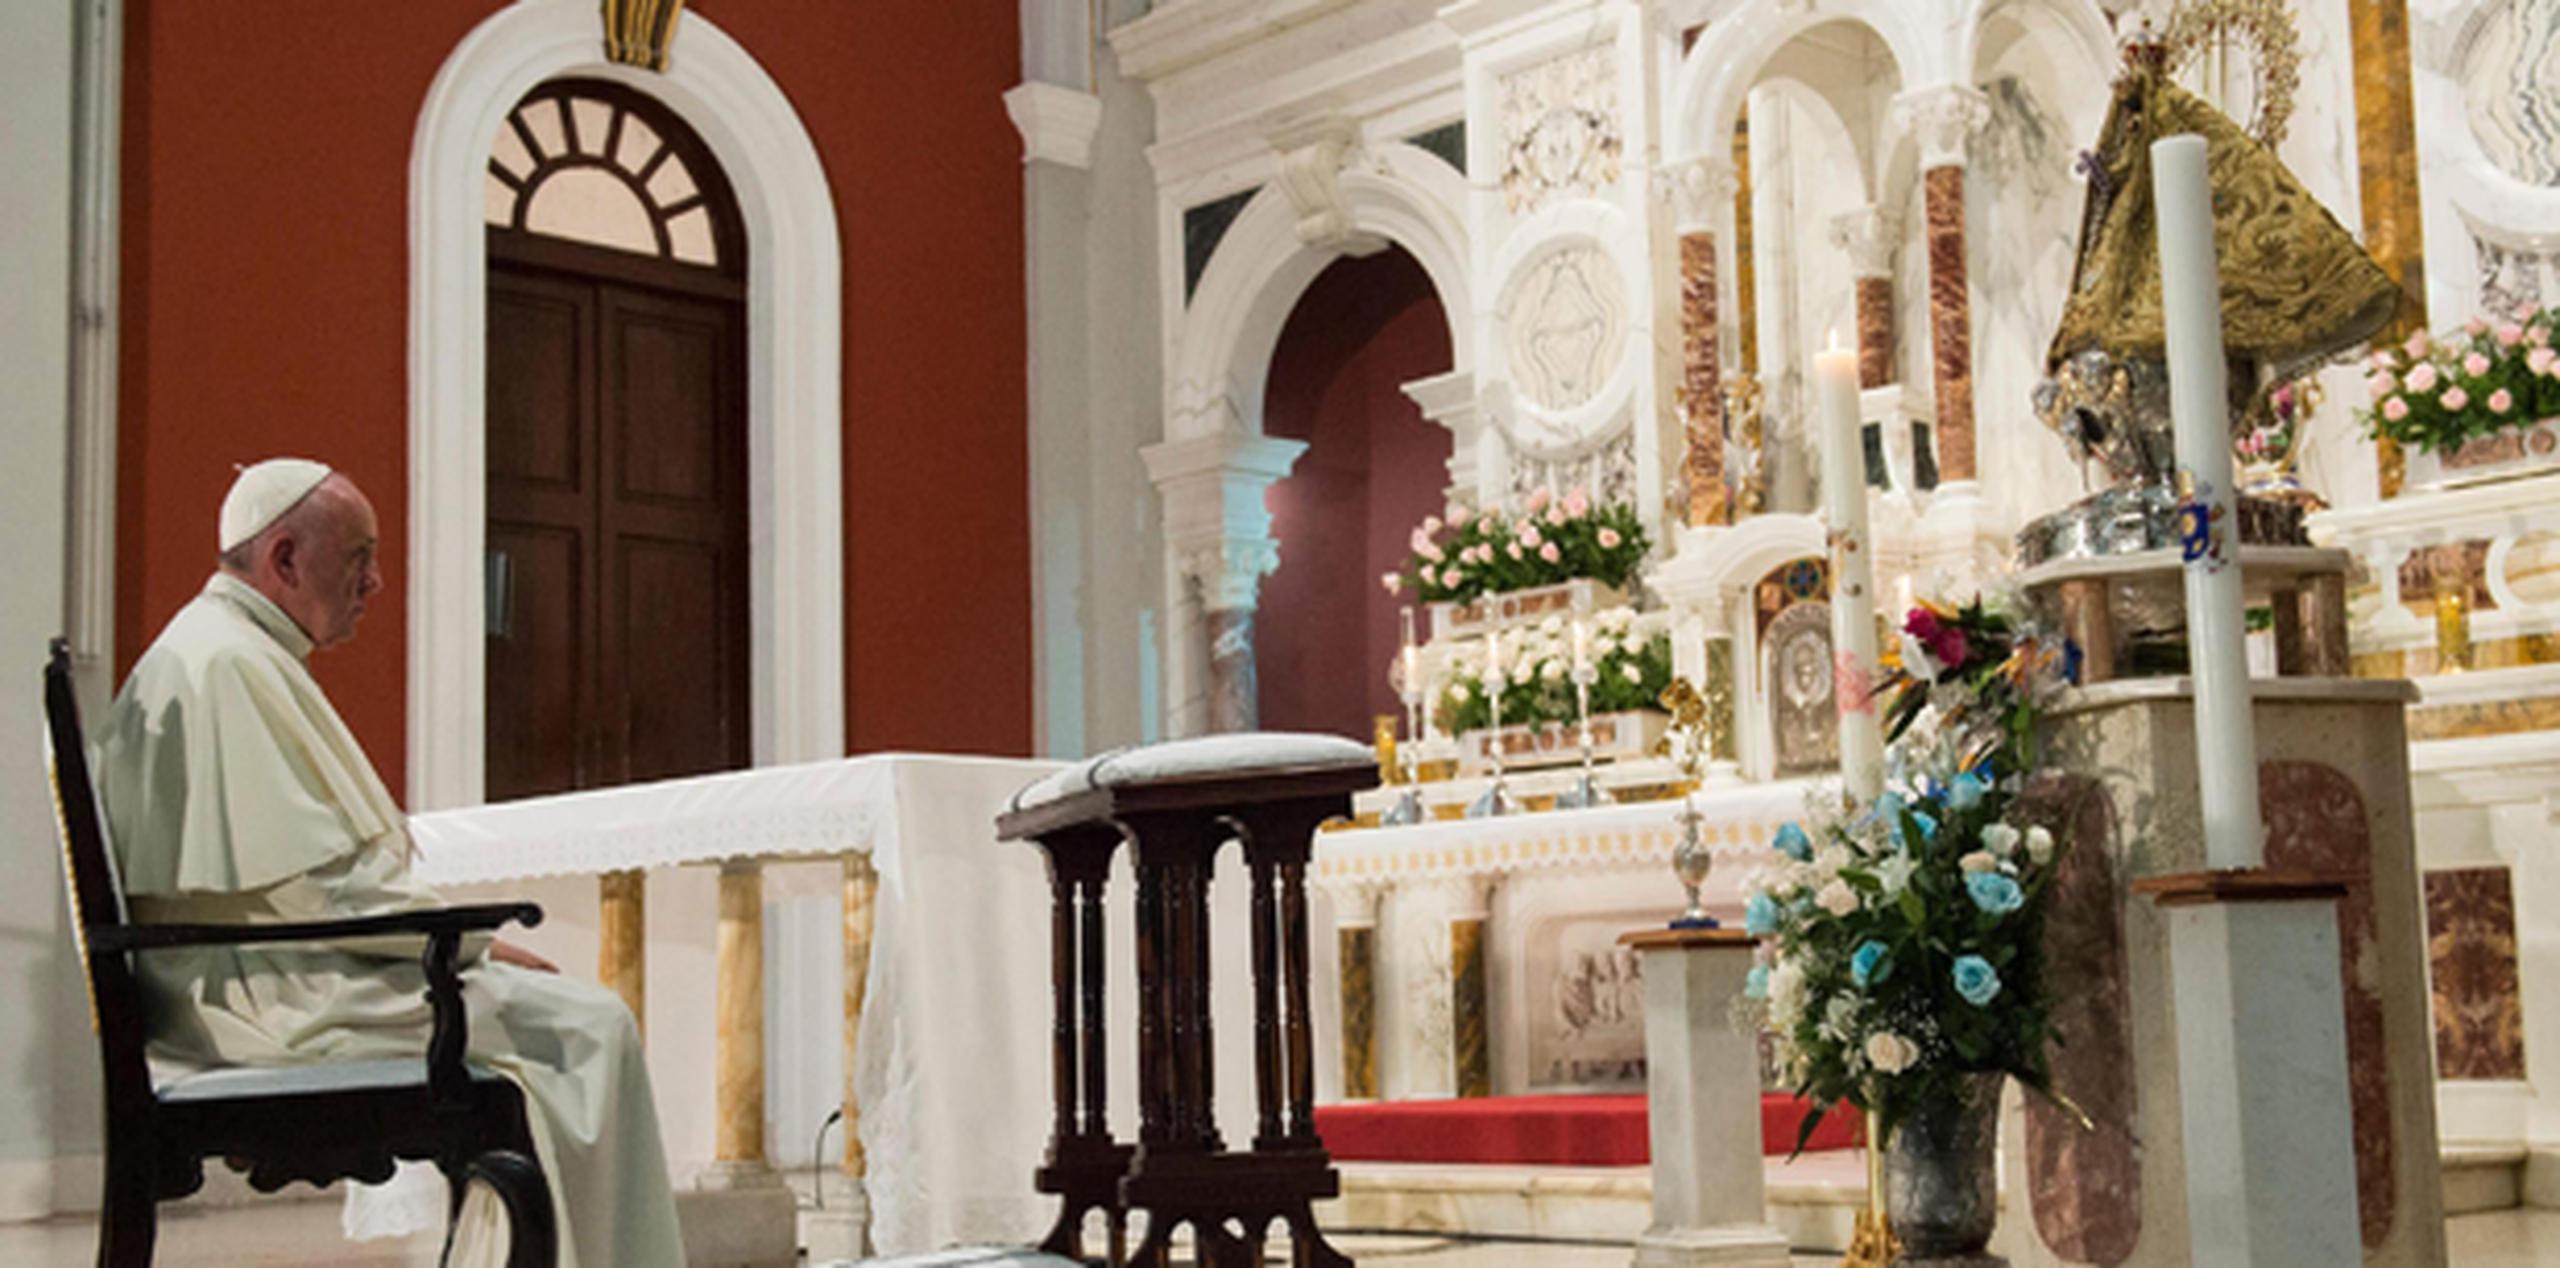 El pontífice oficiará su tercera y última misa en la Basílica del santuario a la virgen y sostendrá un encuentro con familias antes de viajar a Estados Unidos. (EFE)